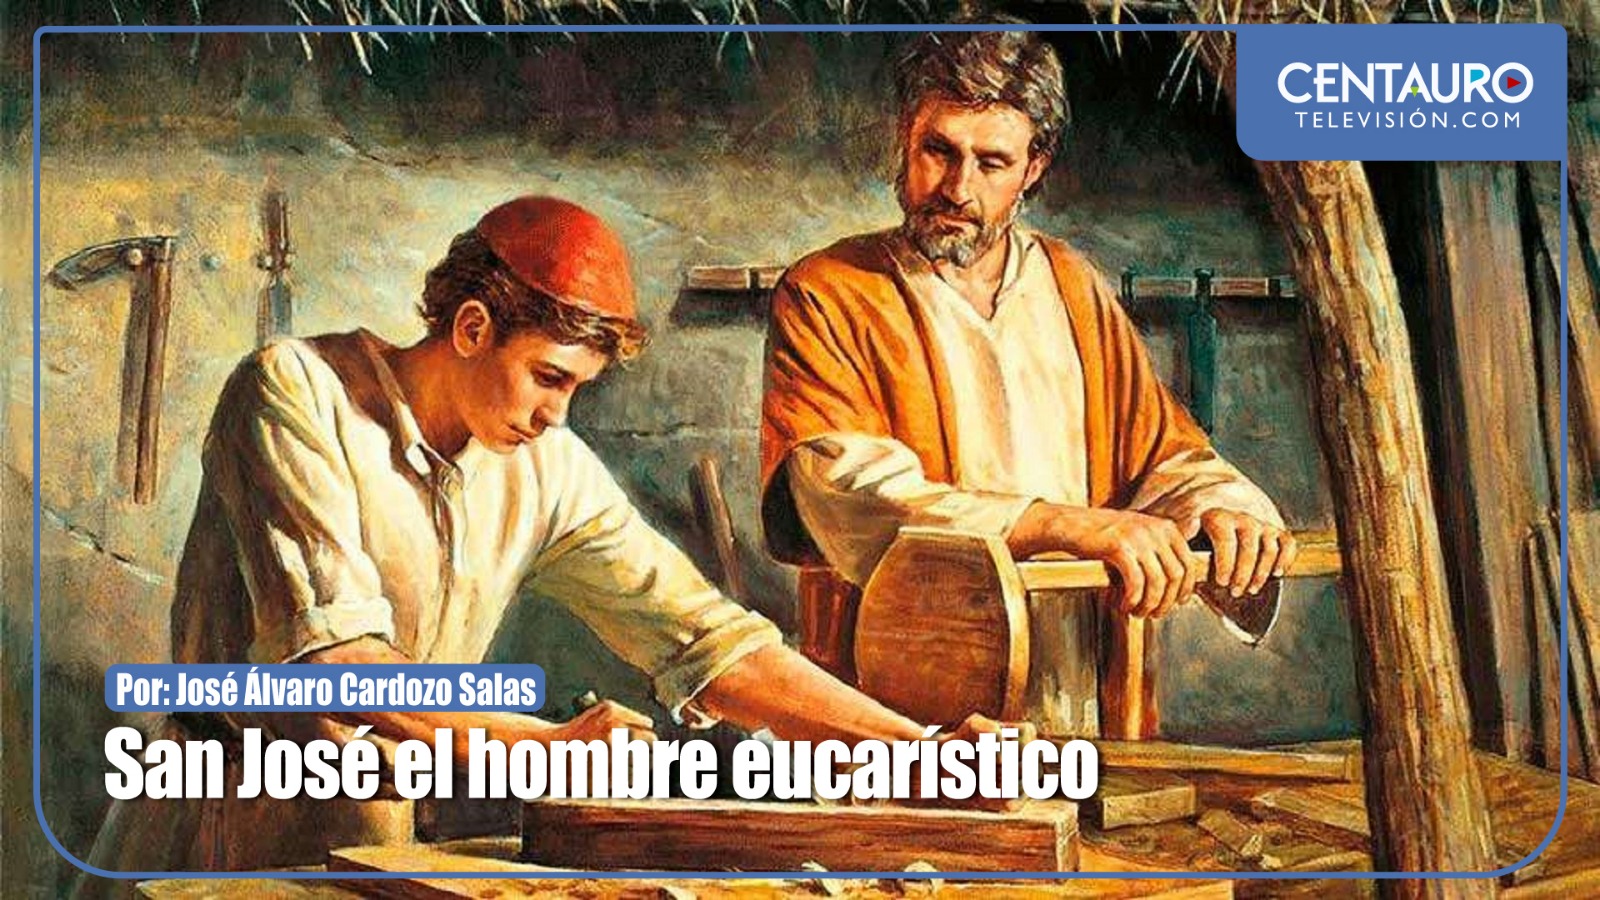 San José el hombre eucarístico.